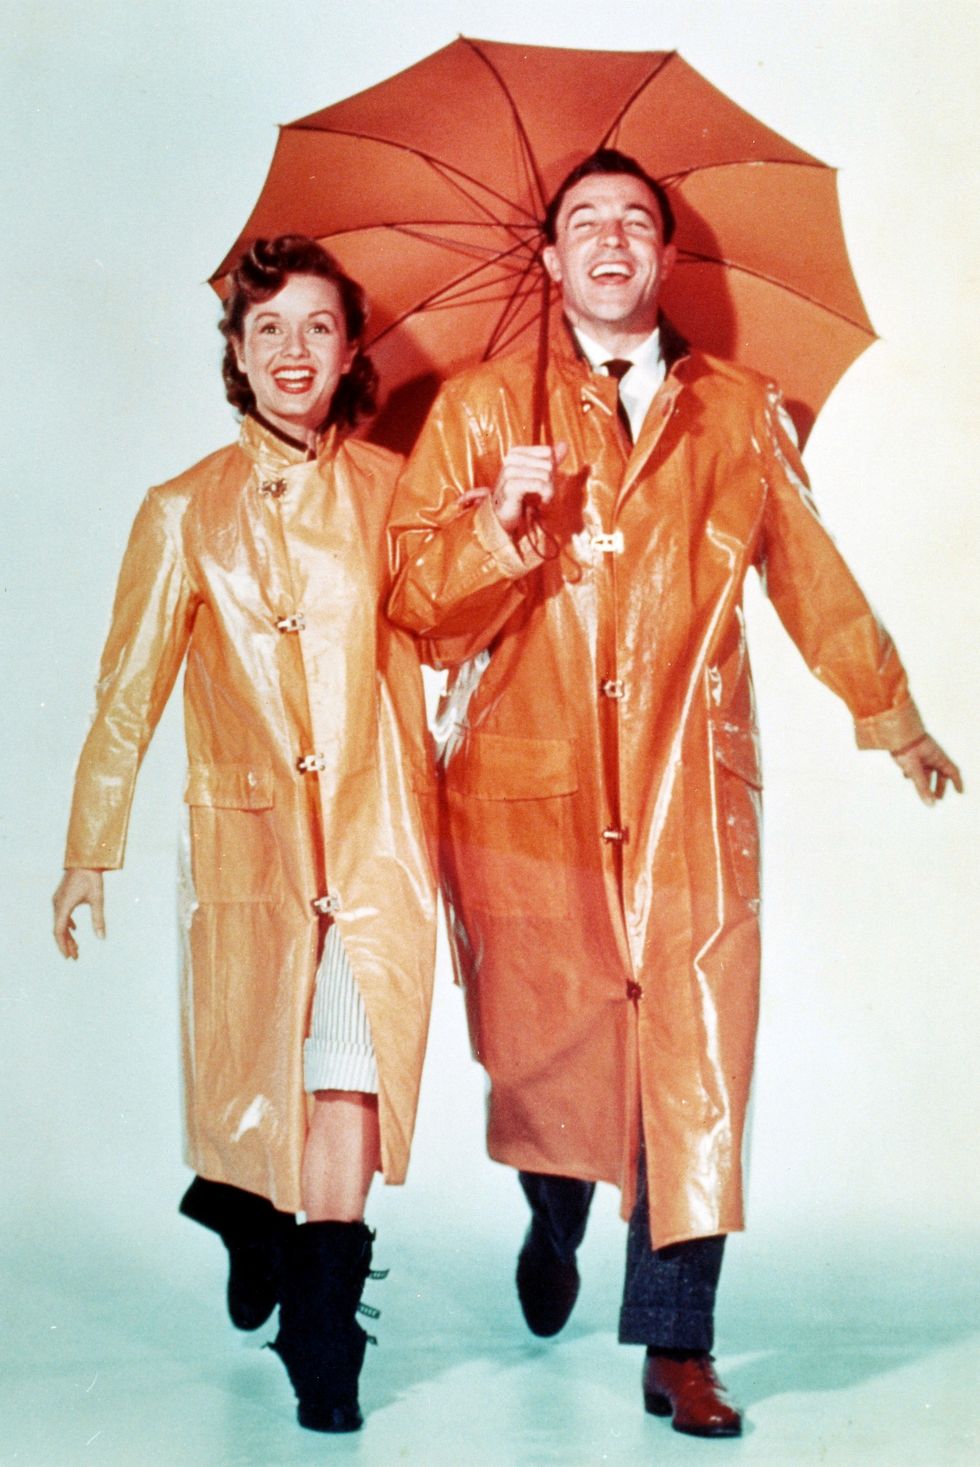 Khoảnh khắc mang giày mang tính biểu tượng nhất trong phim Singin' in the Rain, 1952.